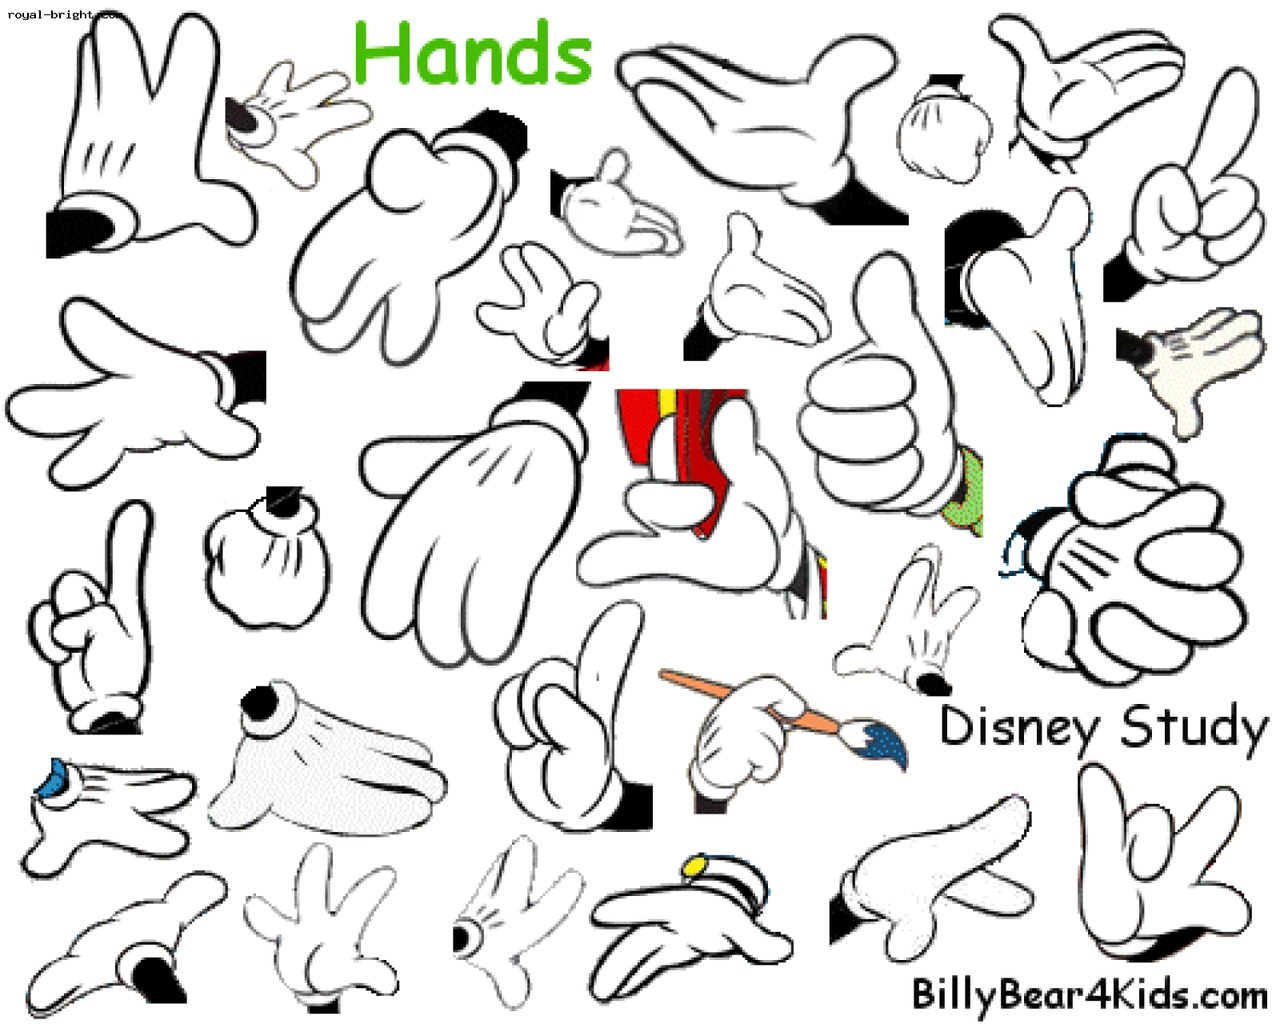 Рисованные руки мультяшные